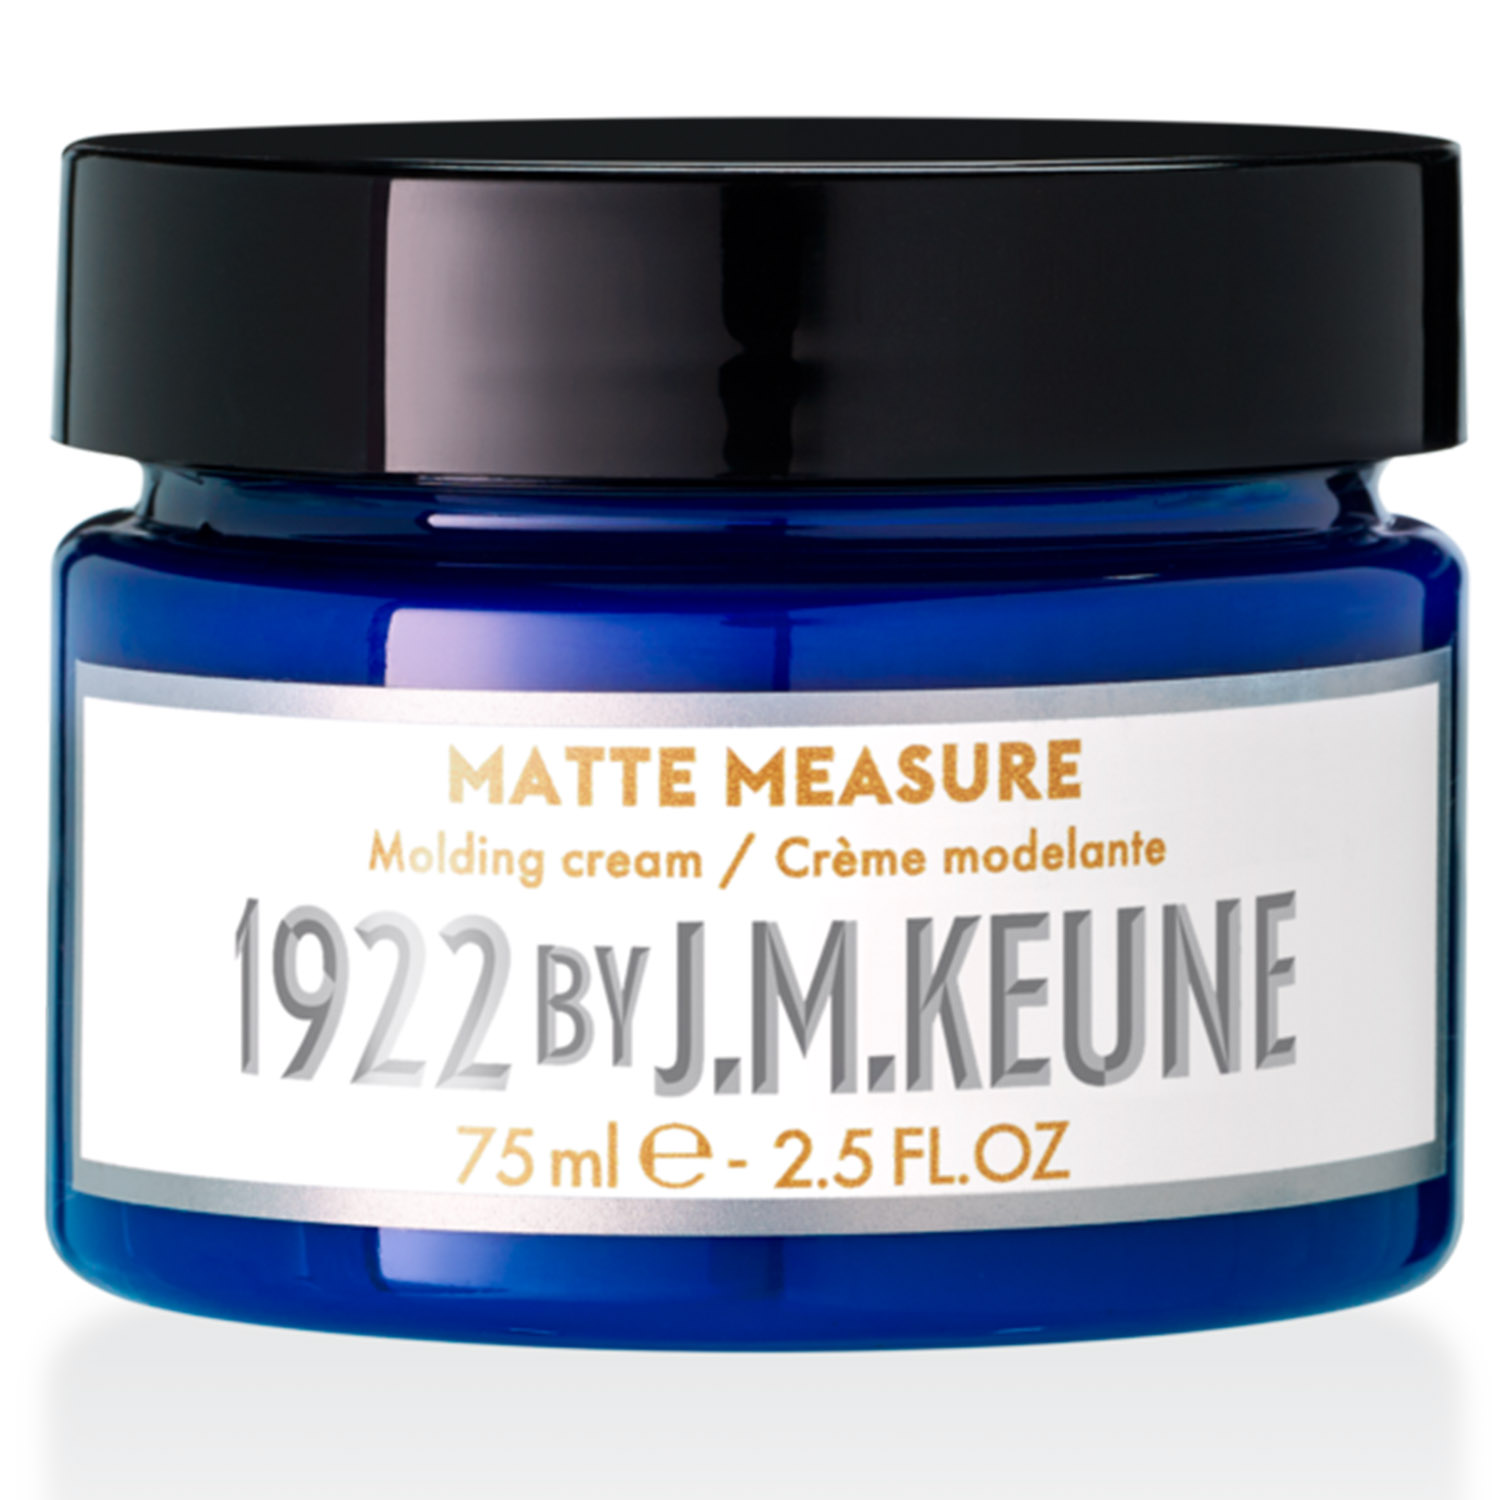 Keune Матирующий крем для укладки волос Matter Measure, 75 мл (Keune, 1922 by J.M. Keune) цена и фото